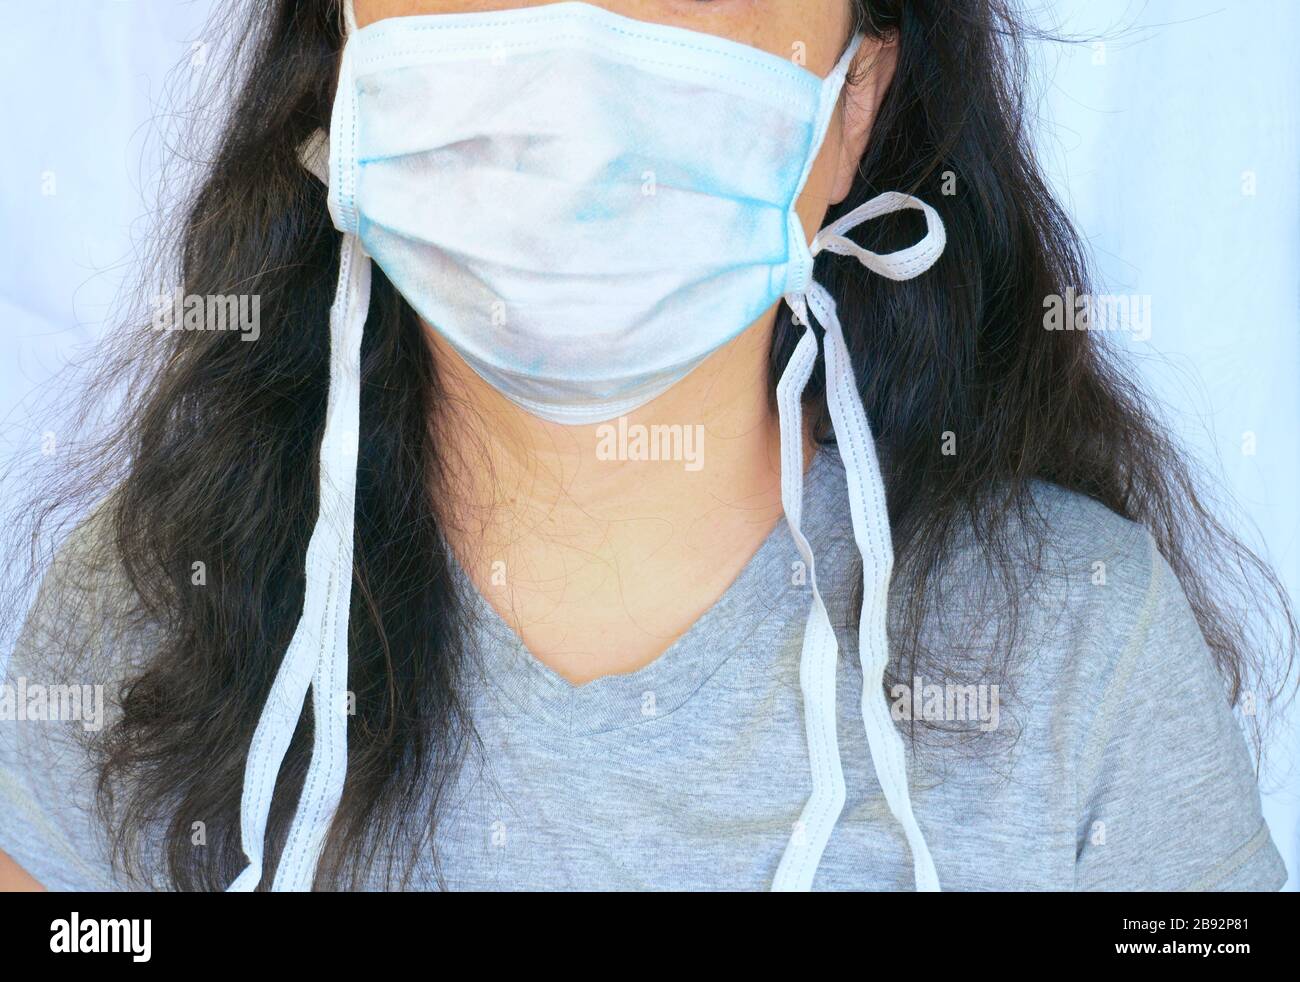 Mujer que lleva una máscara quirúrgica preventiva normal durante la nueva coronavirus alias Covid-19 pandemia. Retrato franco, parte de la cara y el cuerpo y pelo largo. Foto de stock